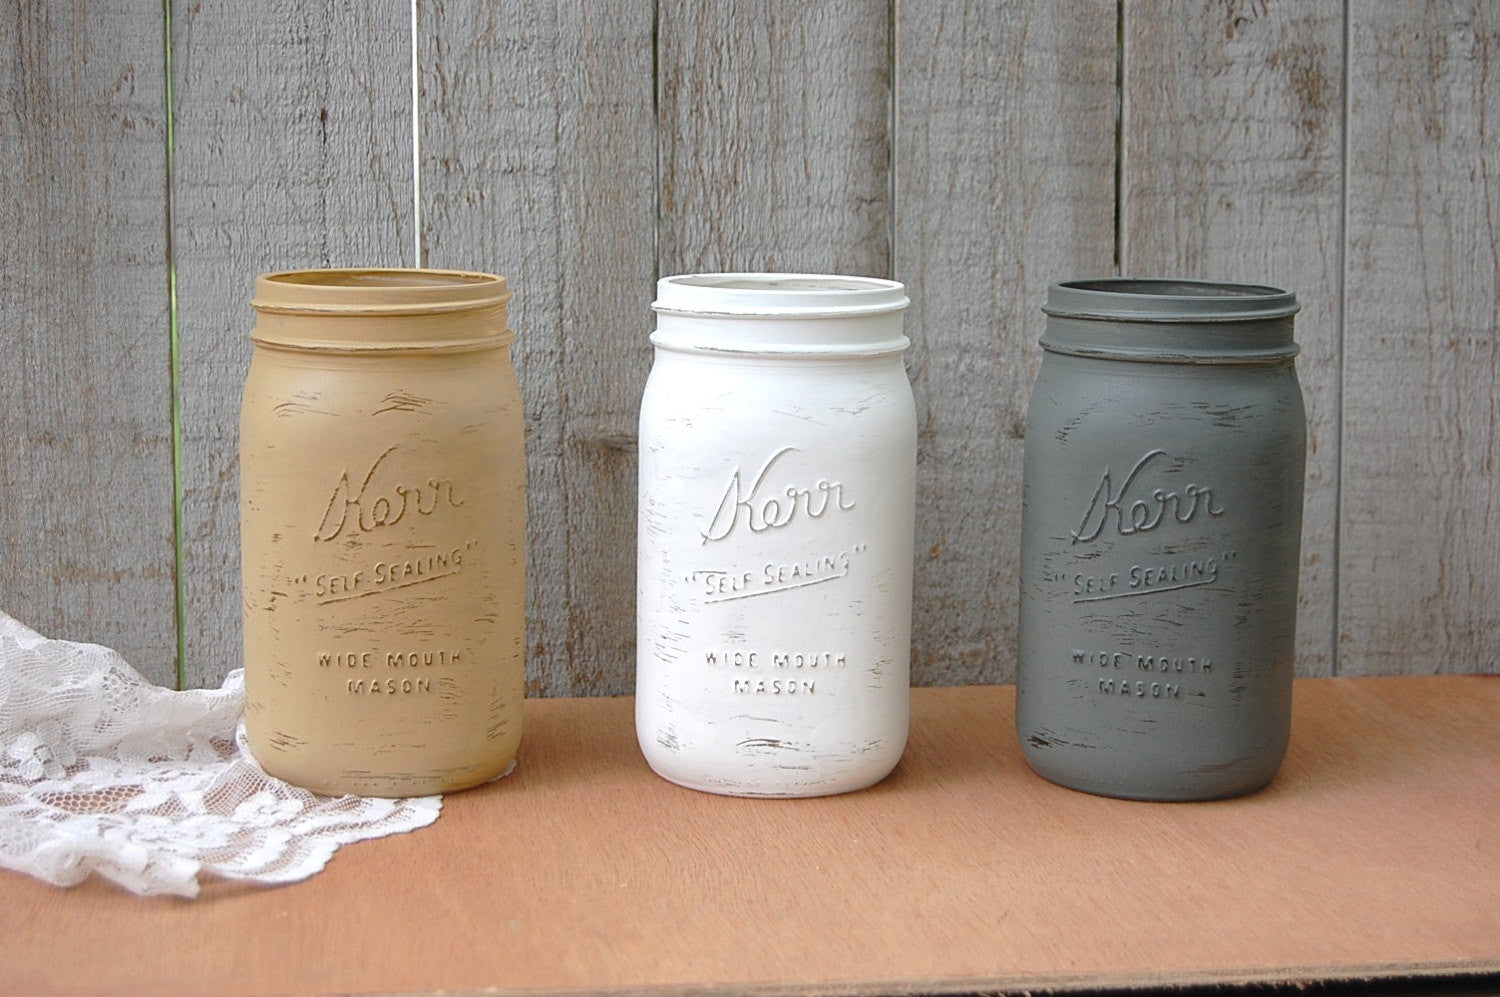 Large Antique White Mason Jar